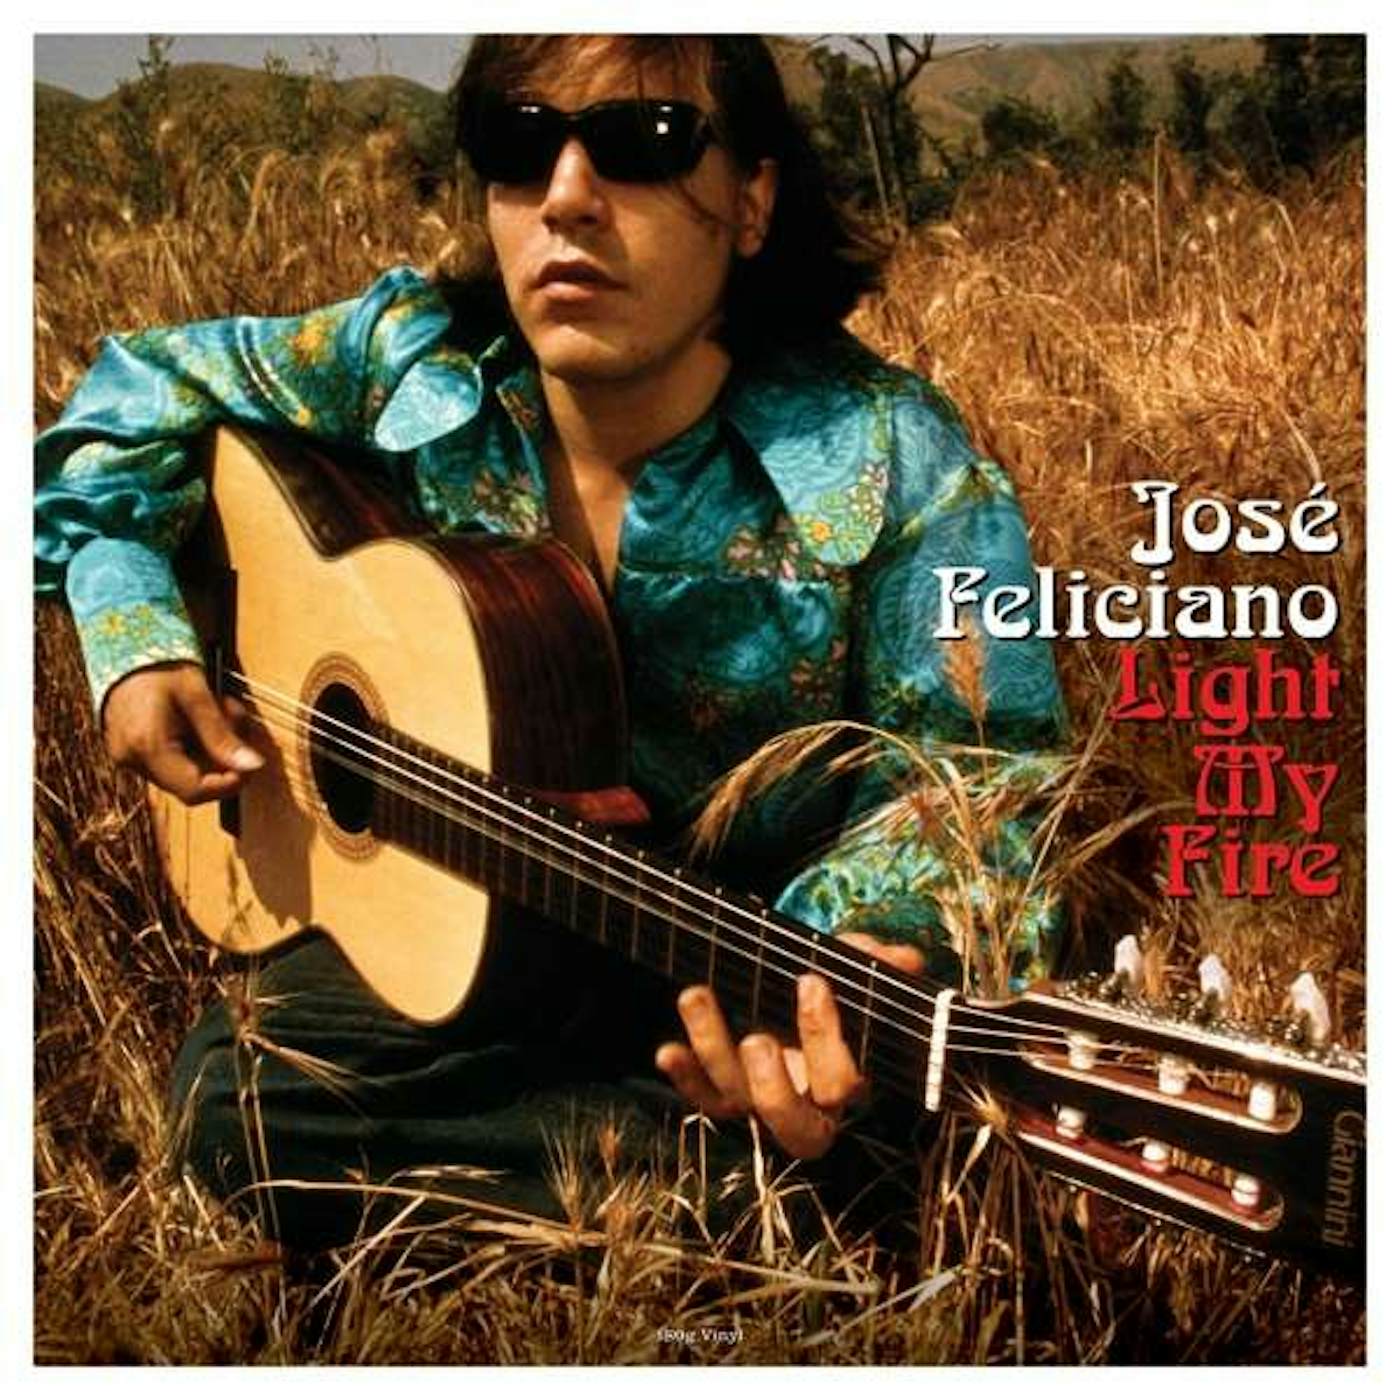 José Feliciano Light My Fire Vinyl Record